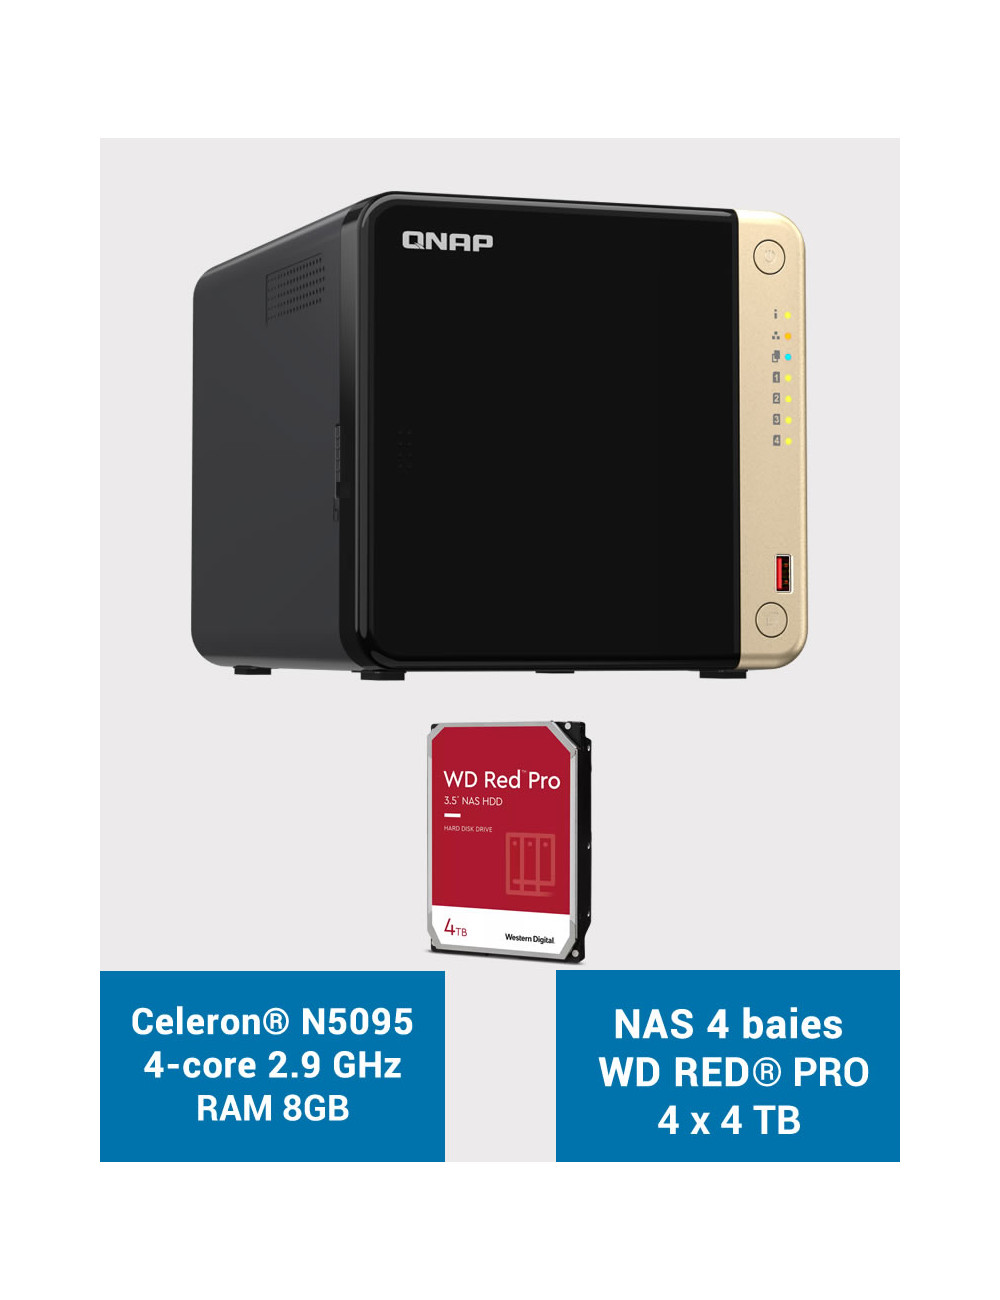 QNAP TS-464 8GB NAS Server 4 bays WD RED PRO 16TB (4x4TB)